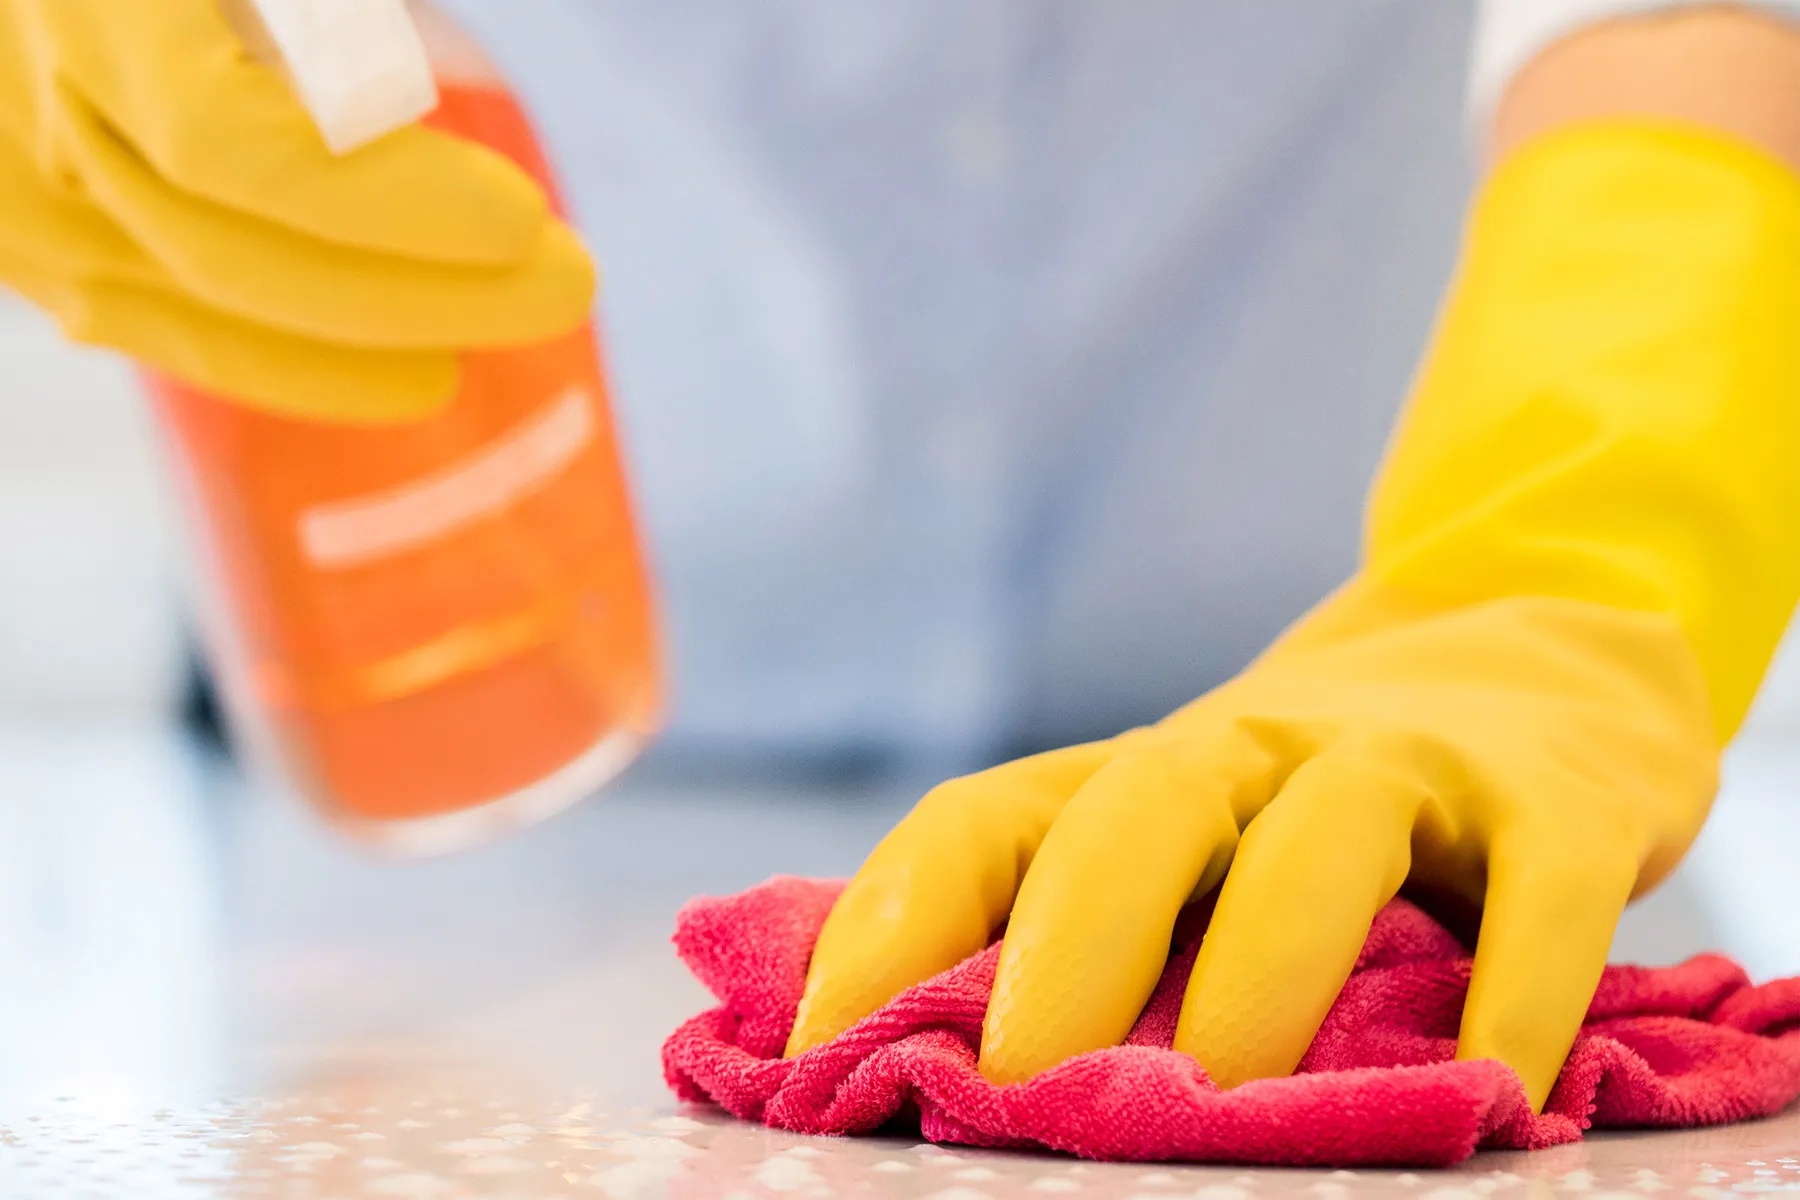 Limpiar + Desinfectar = Dos pasos